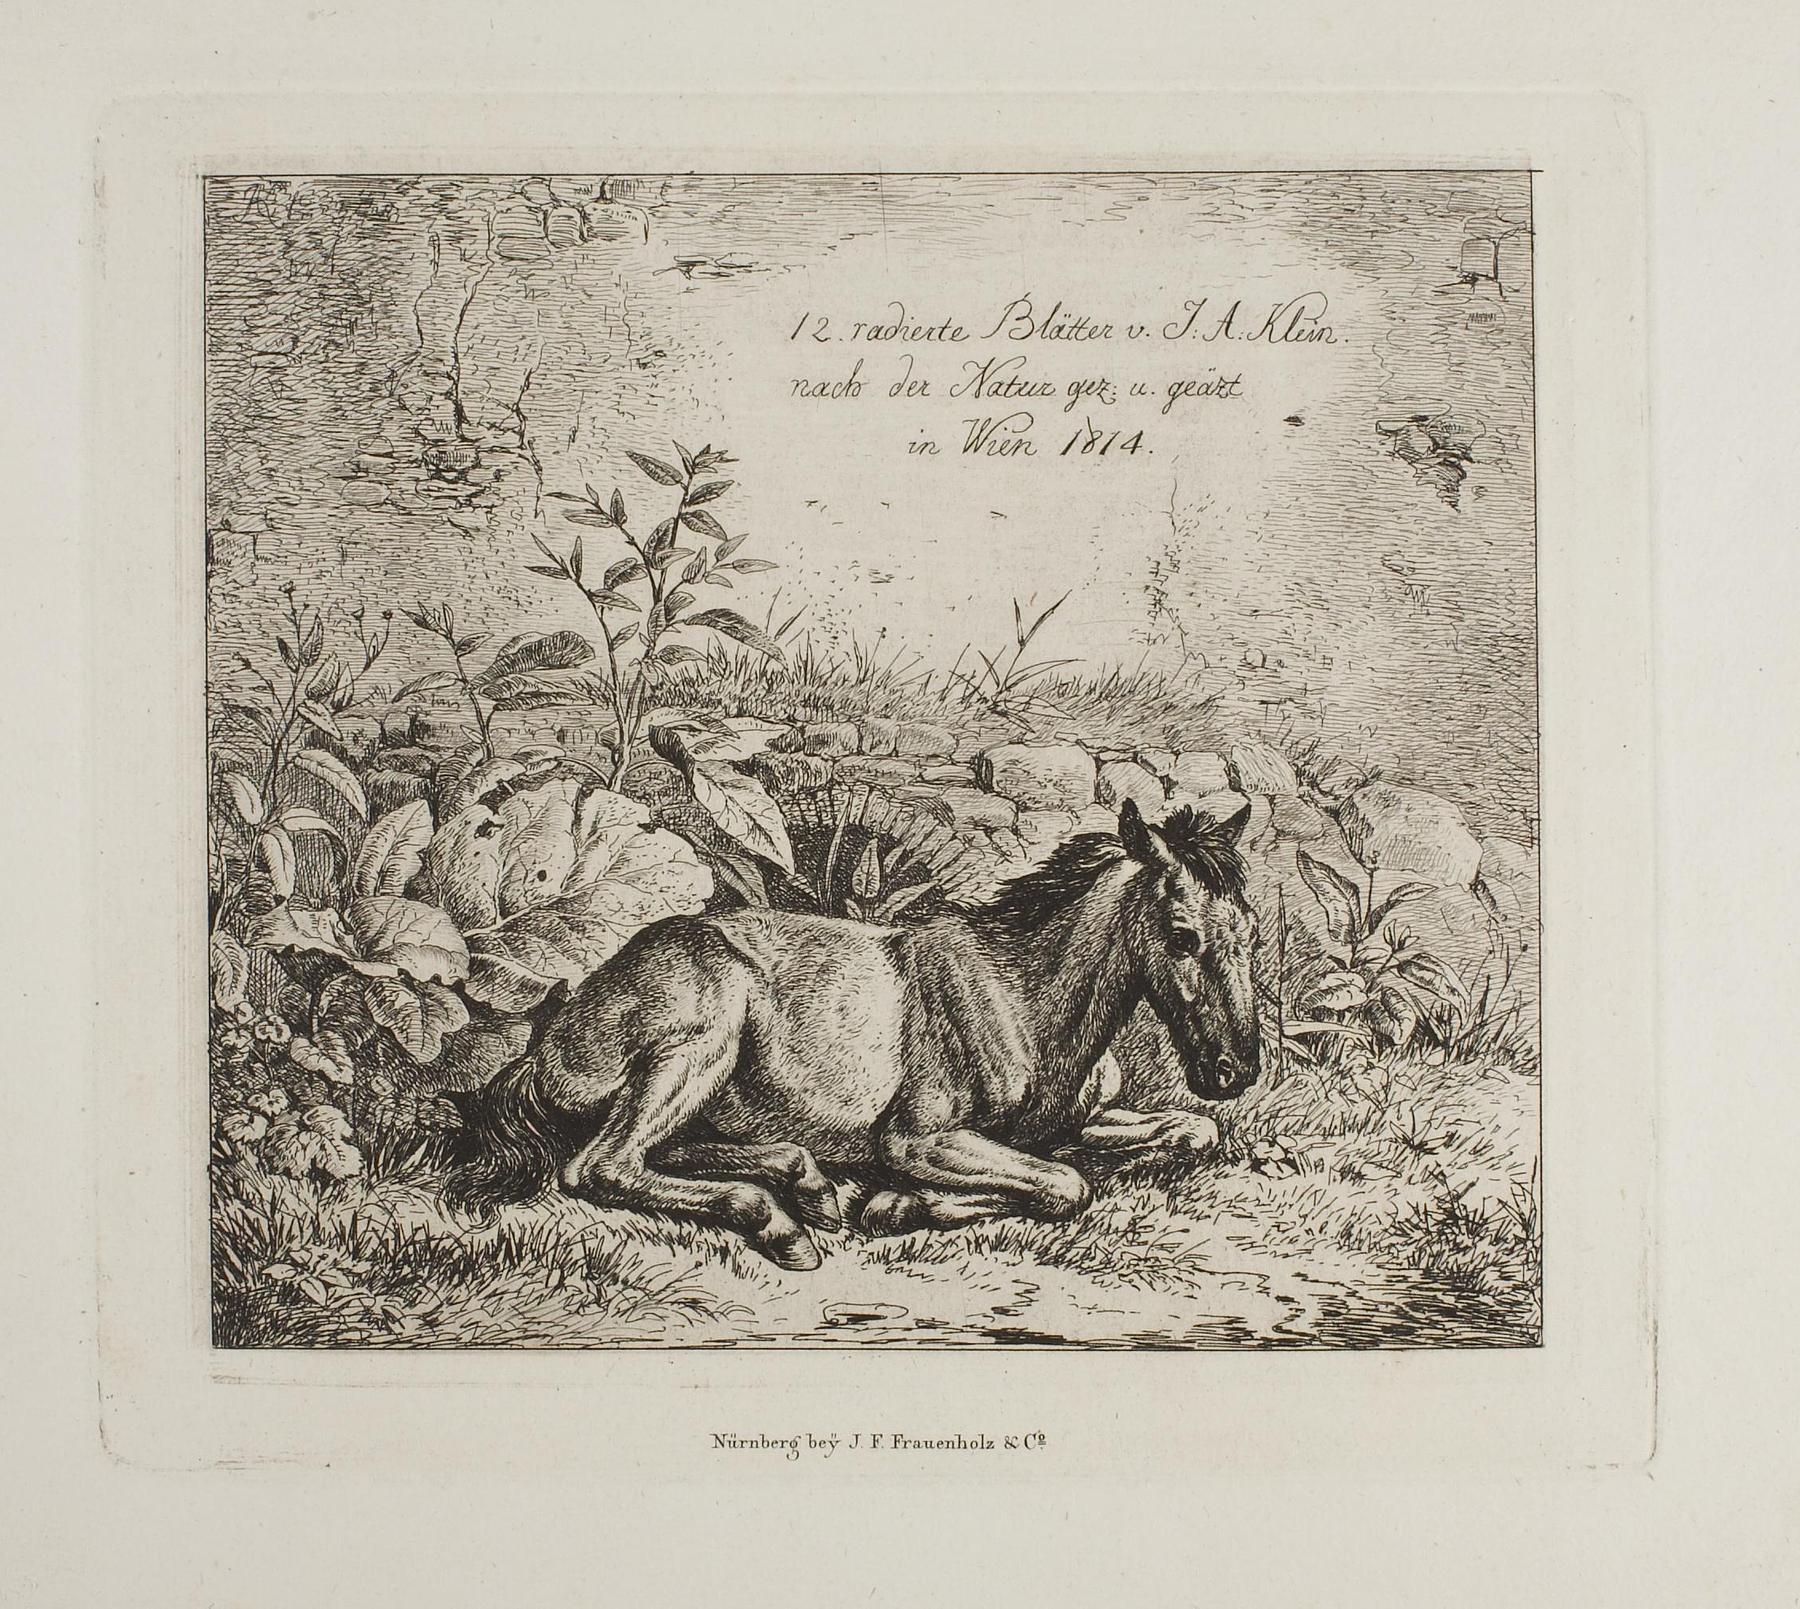 Titelblad til "12 radierte Blätter von Johan Adam Klein", E665,1